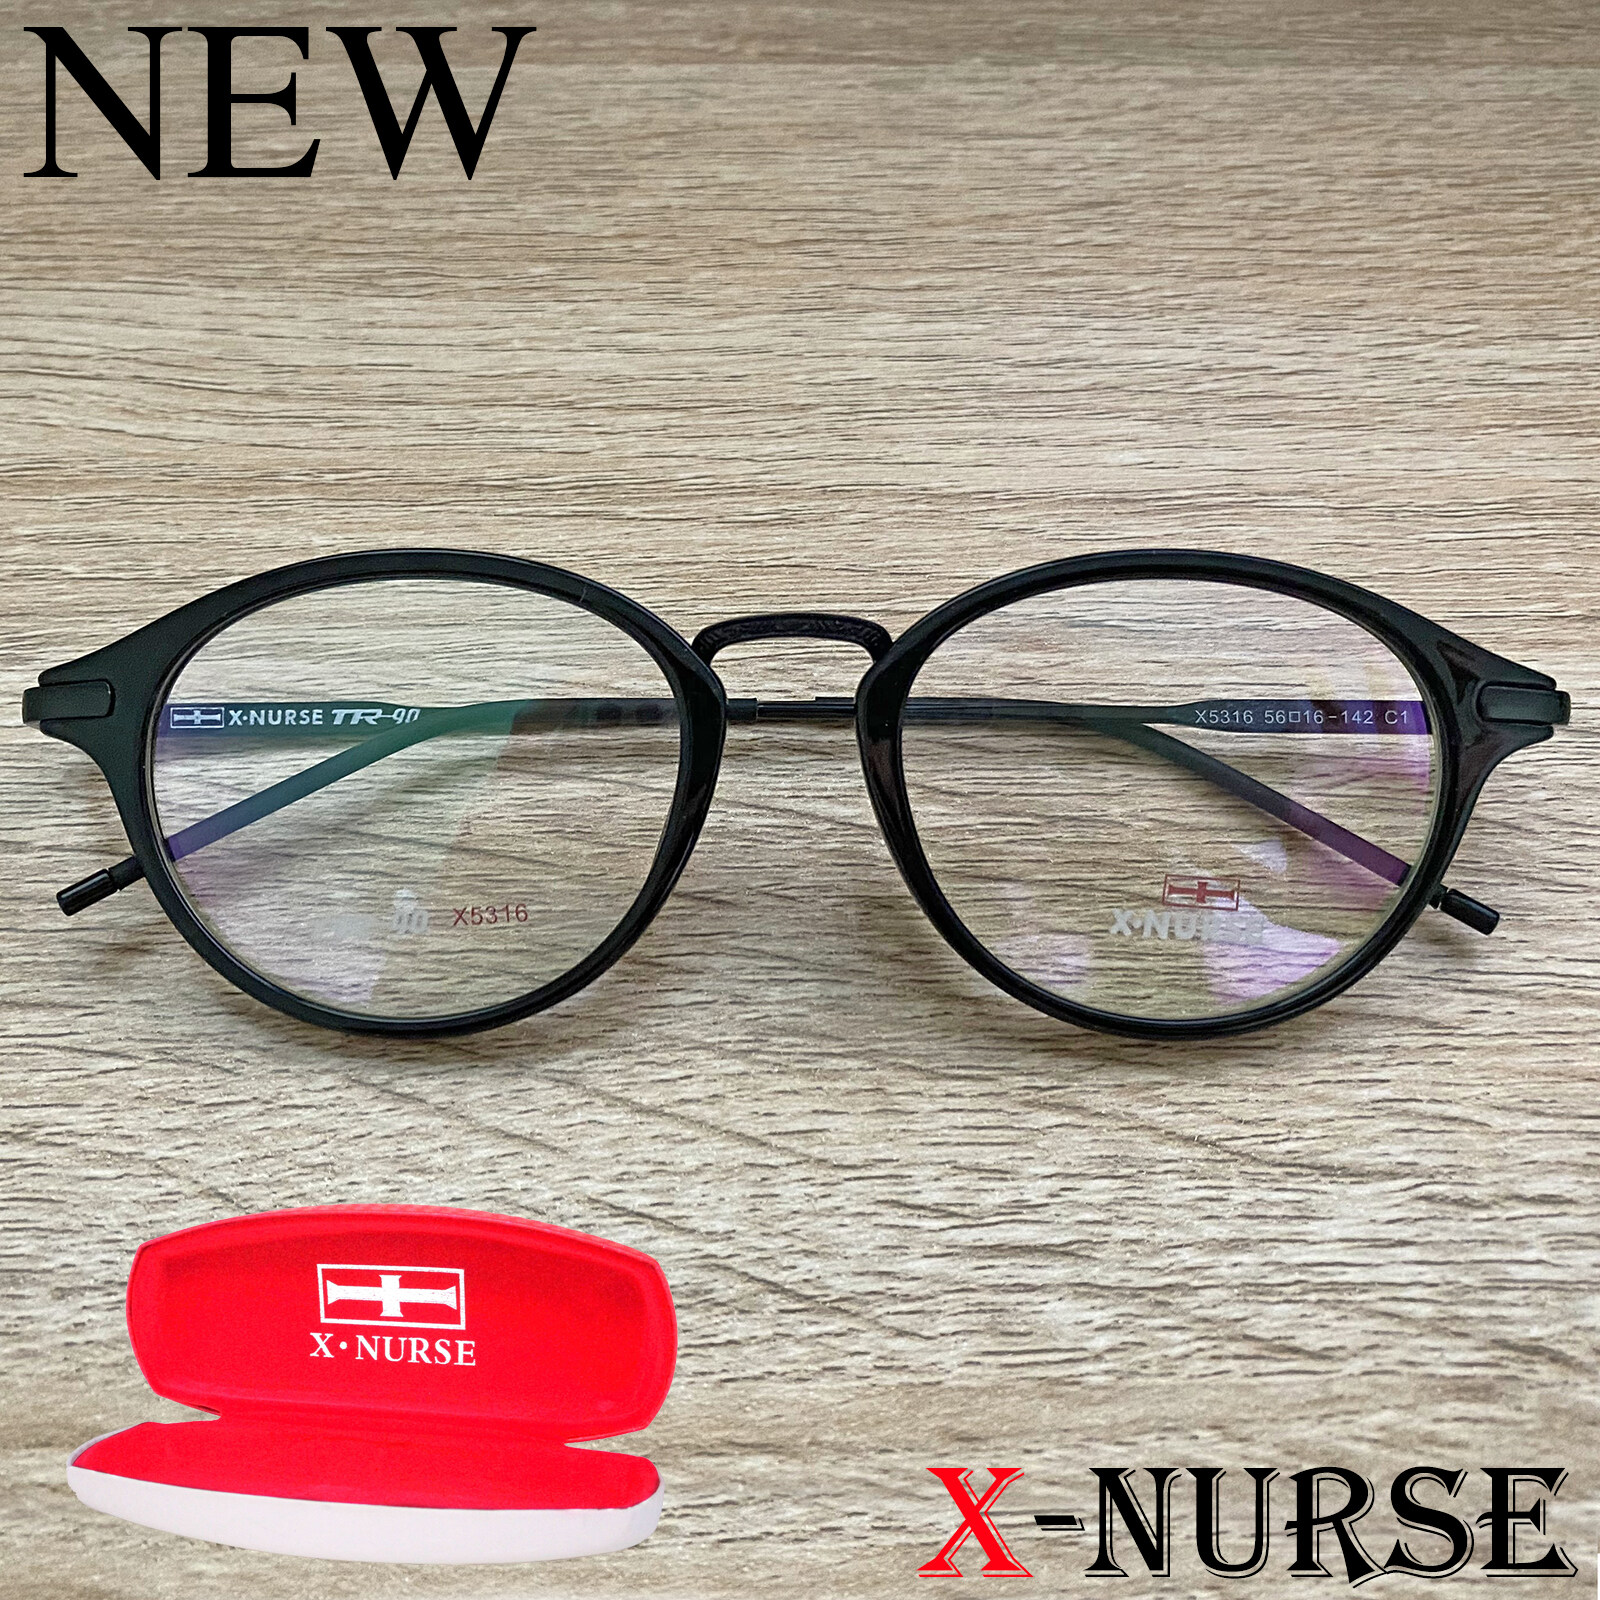 กรอบแว่นตา แว่นตาสำหรับตัดเลนส์ ผู้ชาย ผู้หญิง Fashion รุ่น X-NURSE 5316 สีดำ ทรงรี ขาข้อต่อ วัสดุ พลาสติก พีซี เกรด เอ รับตัดเลนส์สายตาเลนส์กันแดดทุกชนิด